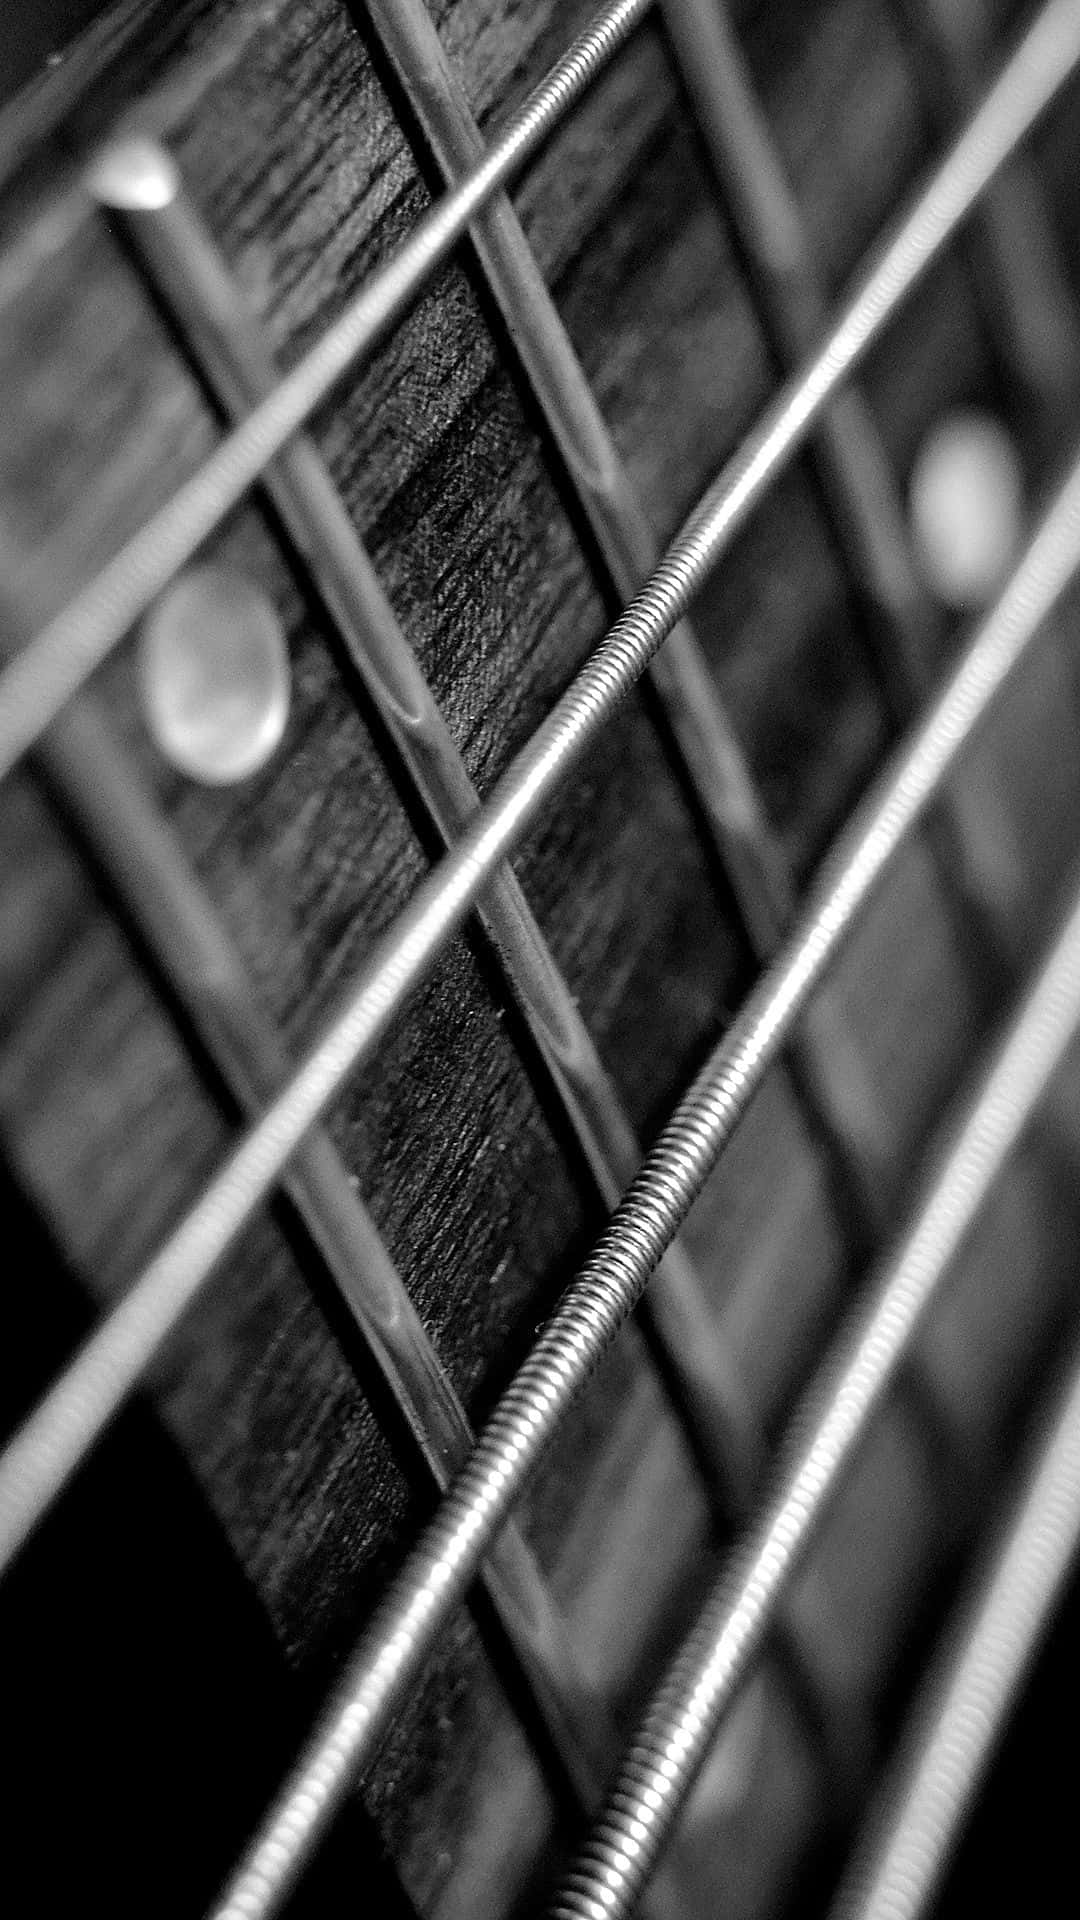 Fotoen Blanco Y Negro De Una Cuerda De Guitarra